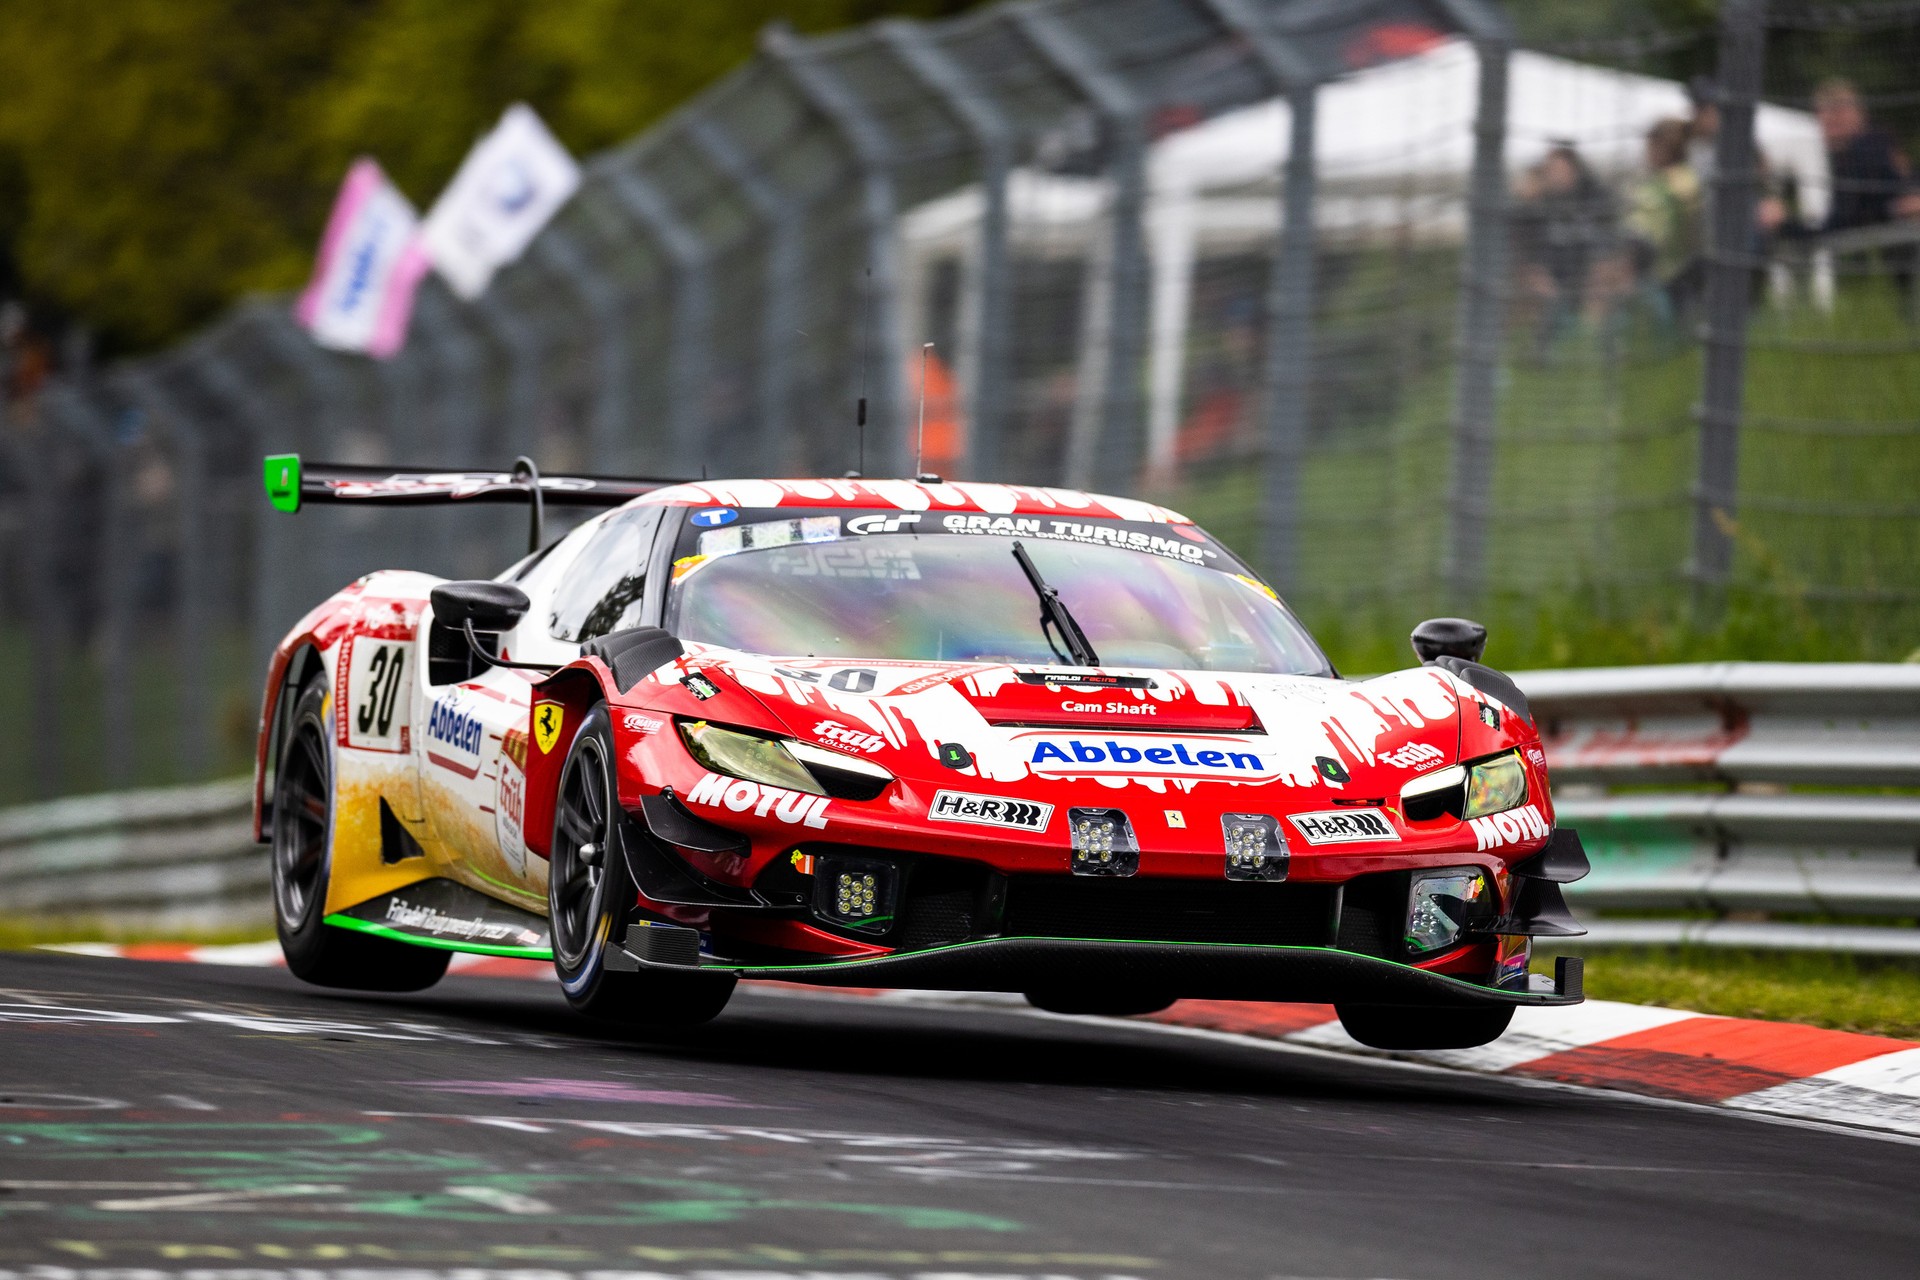 La Ferrari 296 GT3 trionfa alla 24 Ore del Nurburgring